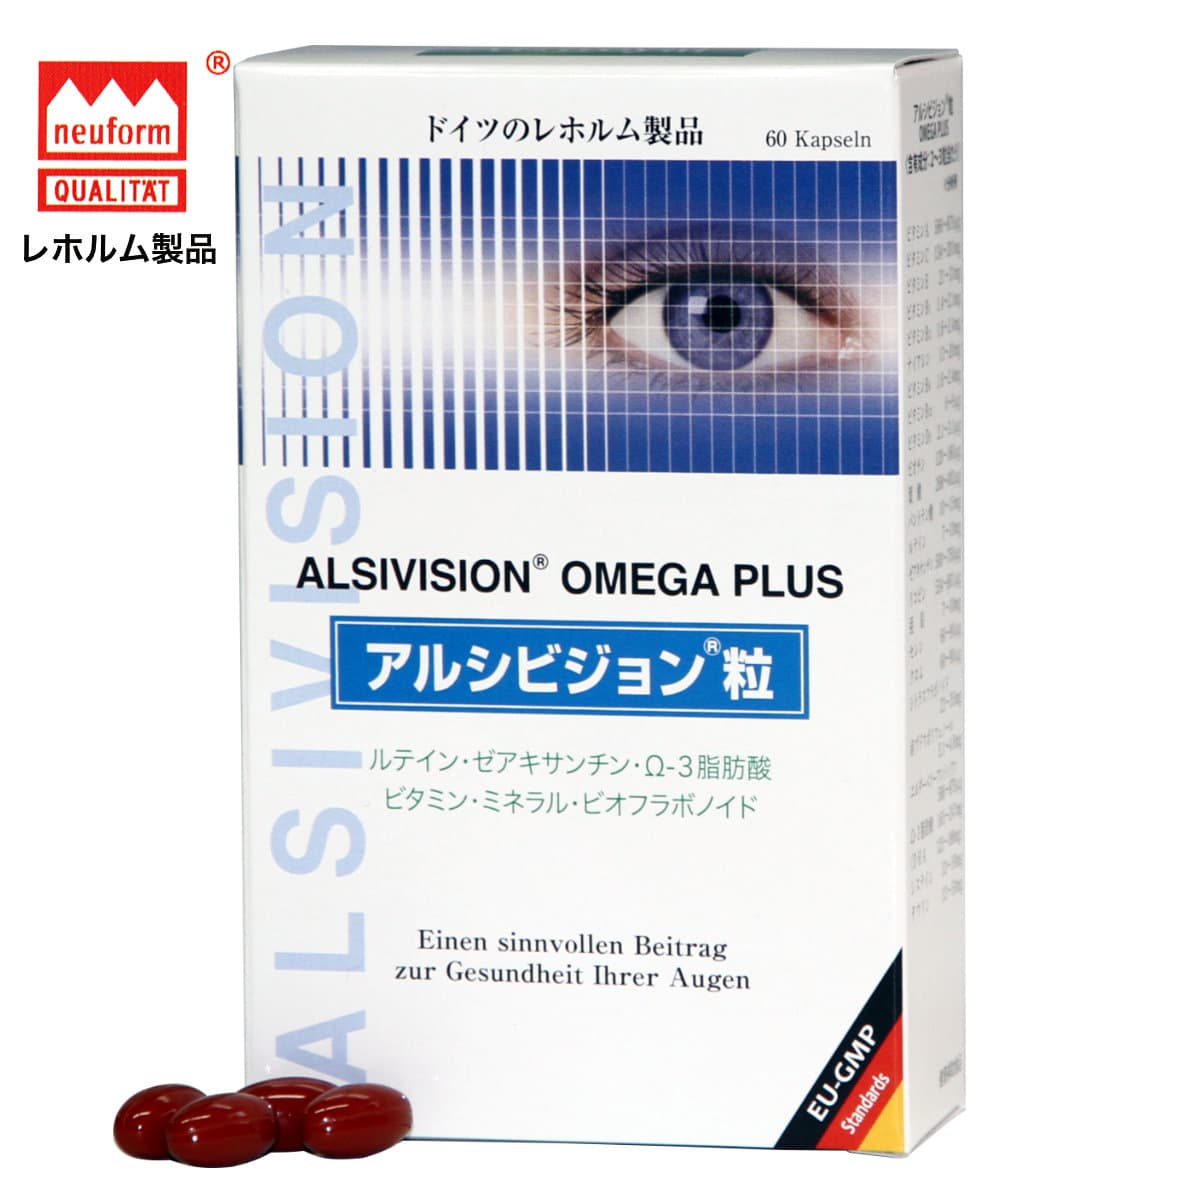 アルシビジョン粒 OMEGA PLUS 60粒 【ポイント10倍 ルティン ゼアキサンチン Ω-3脂肪酸】